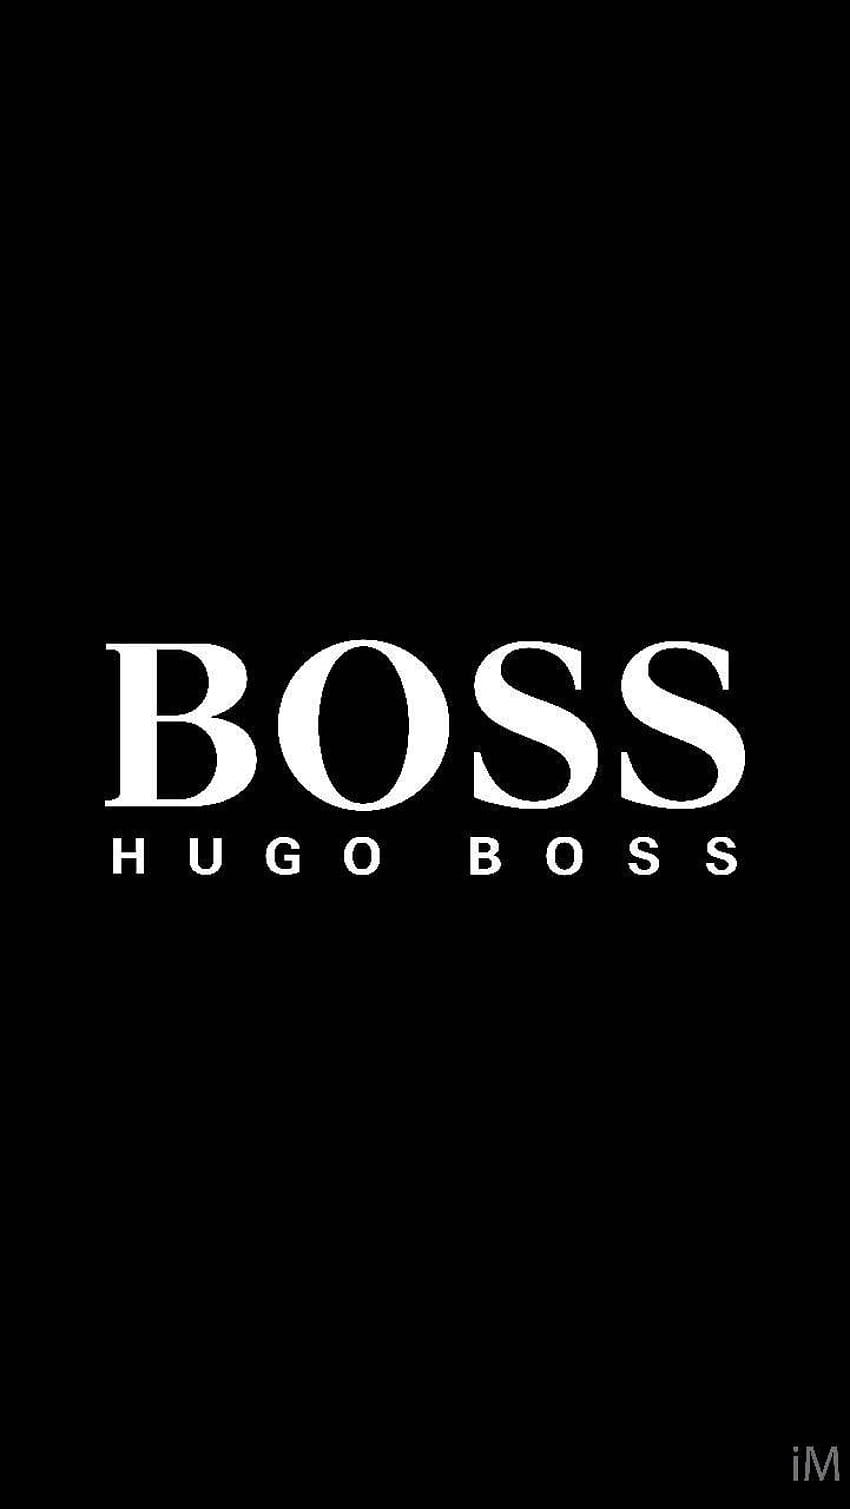 Hugo Boss by imranrishan, the boss HD phone wallpaper